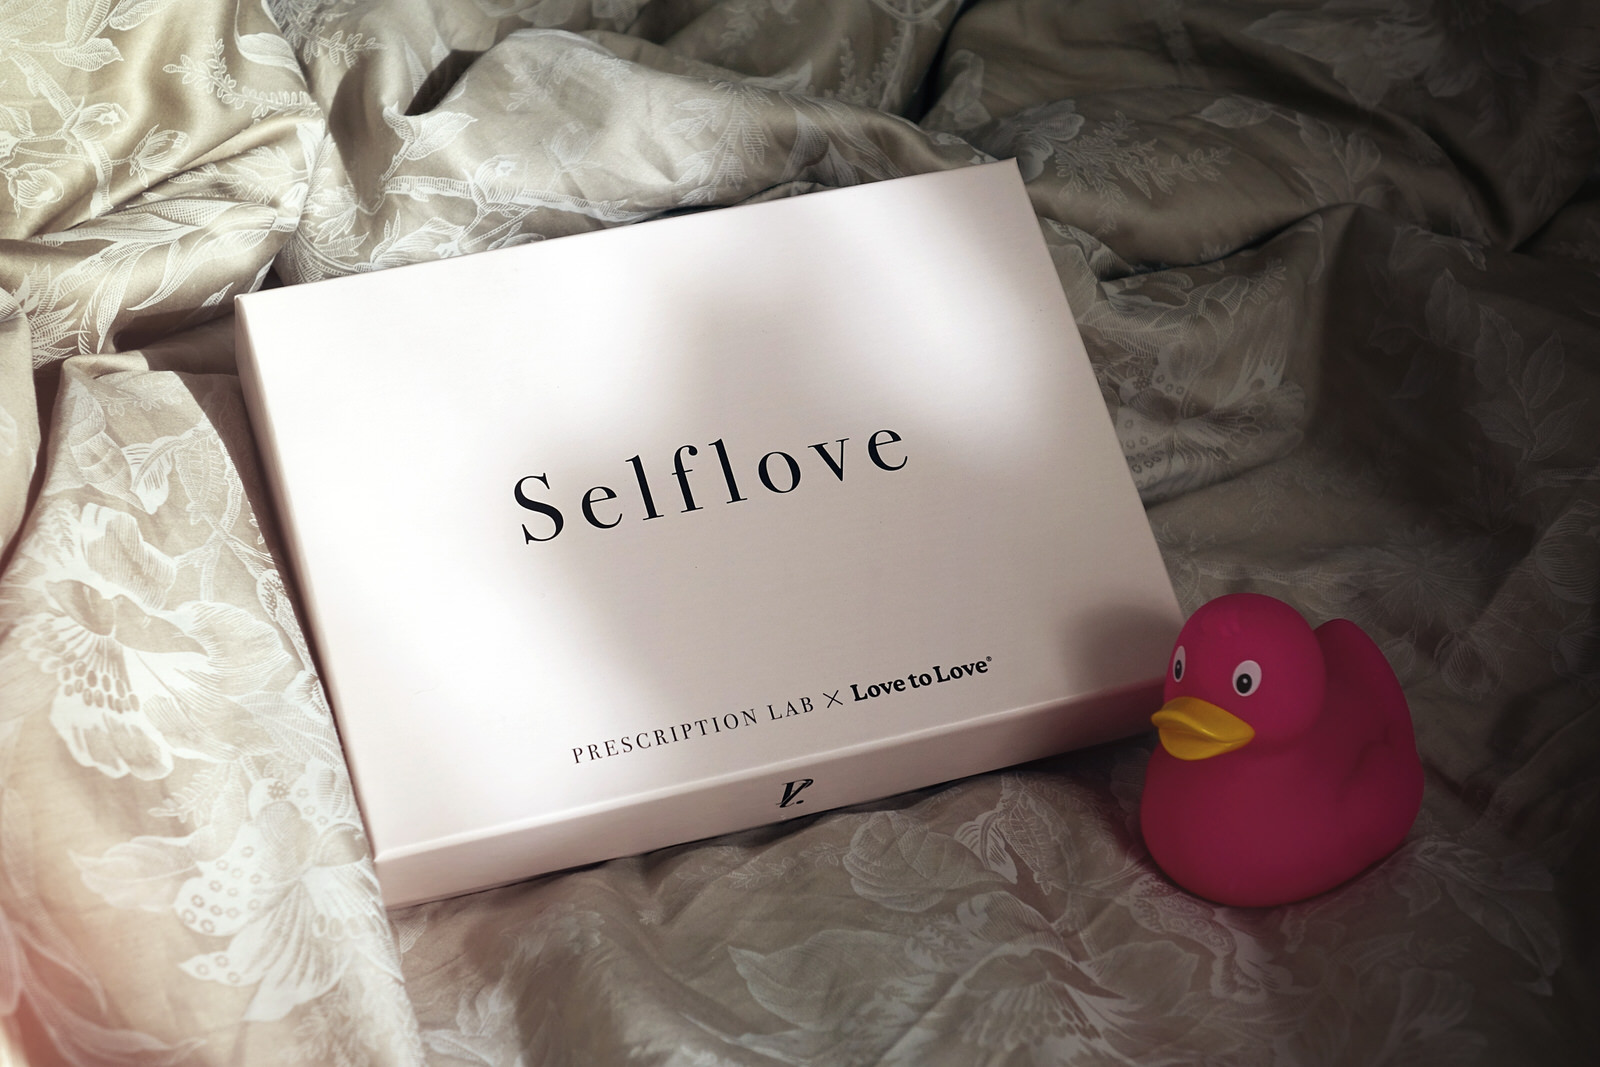 Contenu de la box Prescription Lab, Self Love en collab' avec Love to Love, pour la Saint Valentin